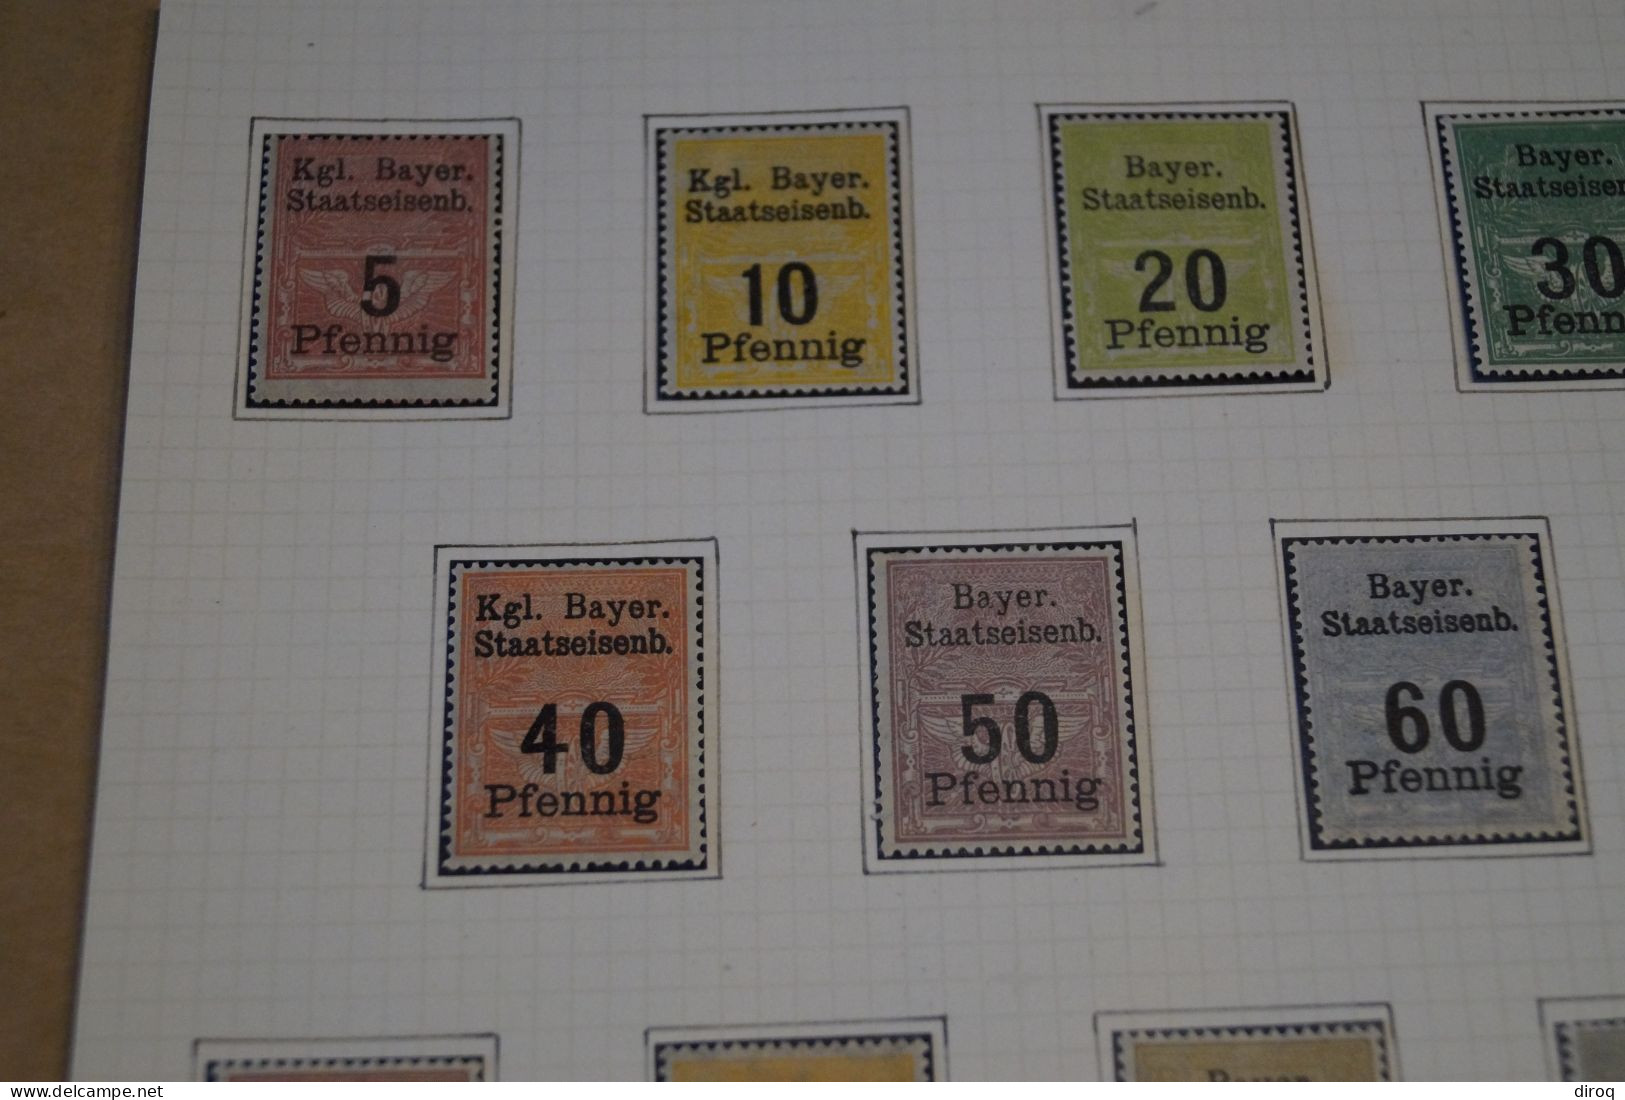 Très Belle Série 14 Timbres,Railway Stamps Bayer,chemin De Fer,1900,neuf Sur Charnière,bel état De Collection - Neufs